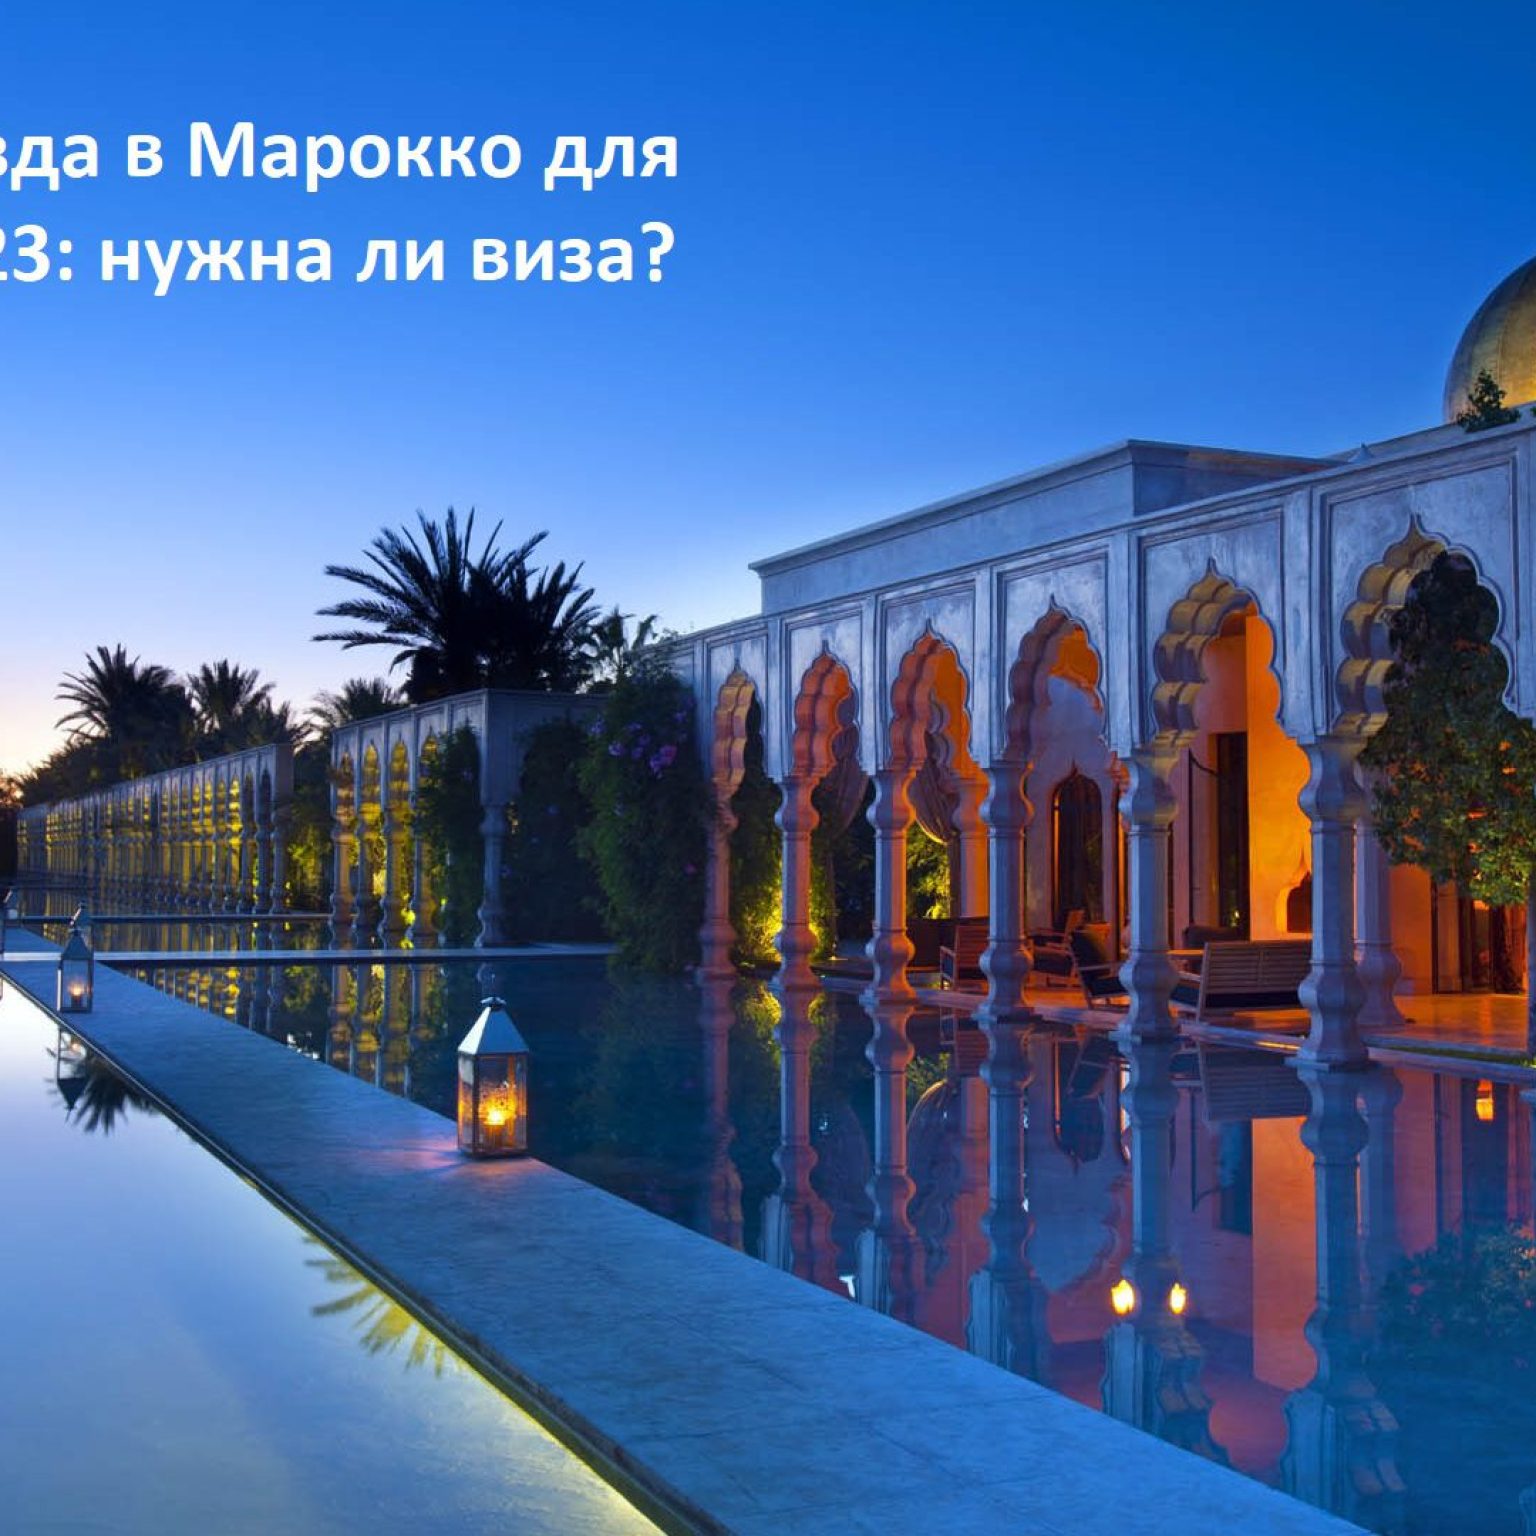 Правила въезда в Марокко для Россиян в 2023: нужна ли виза?